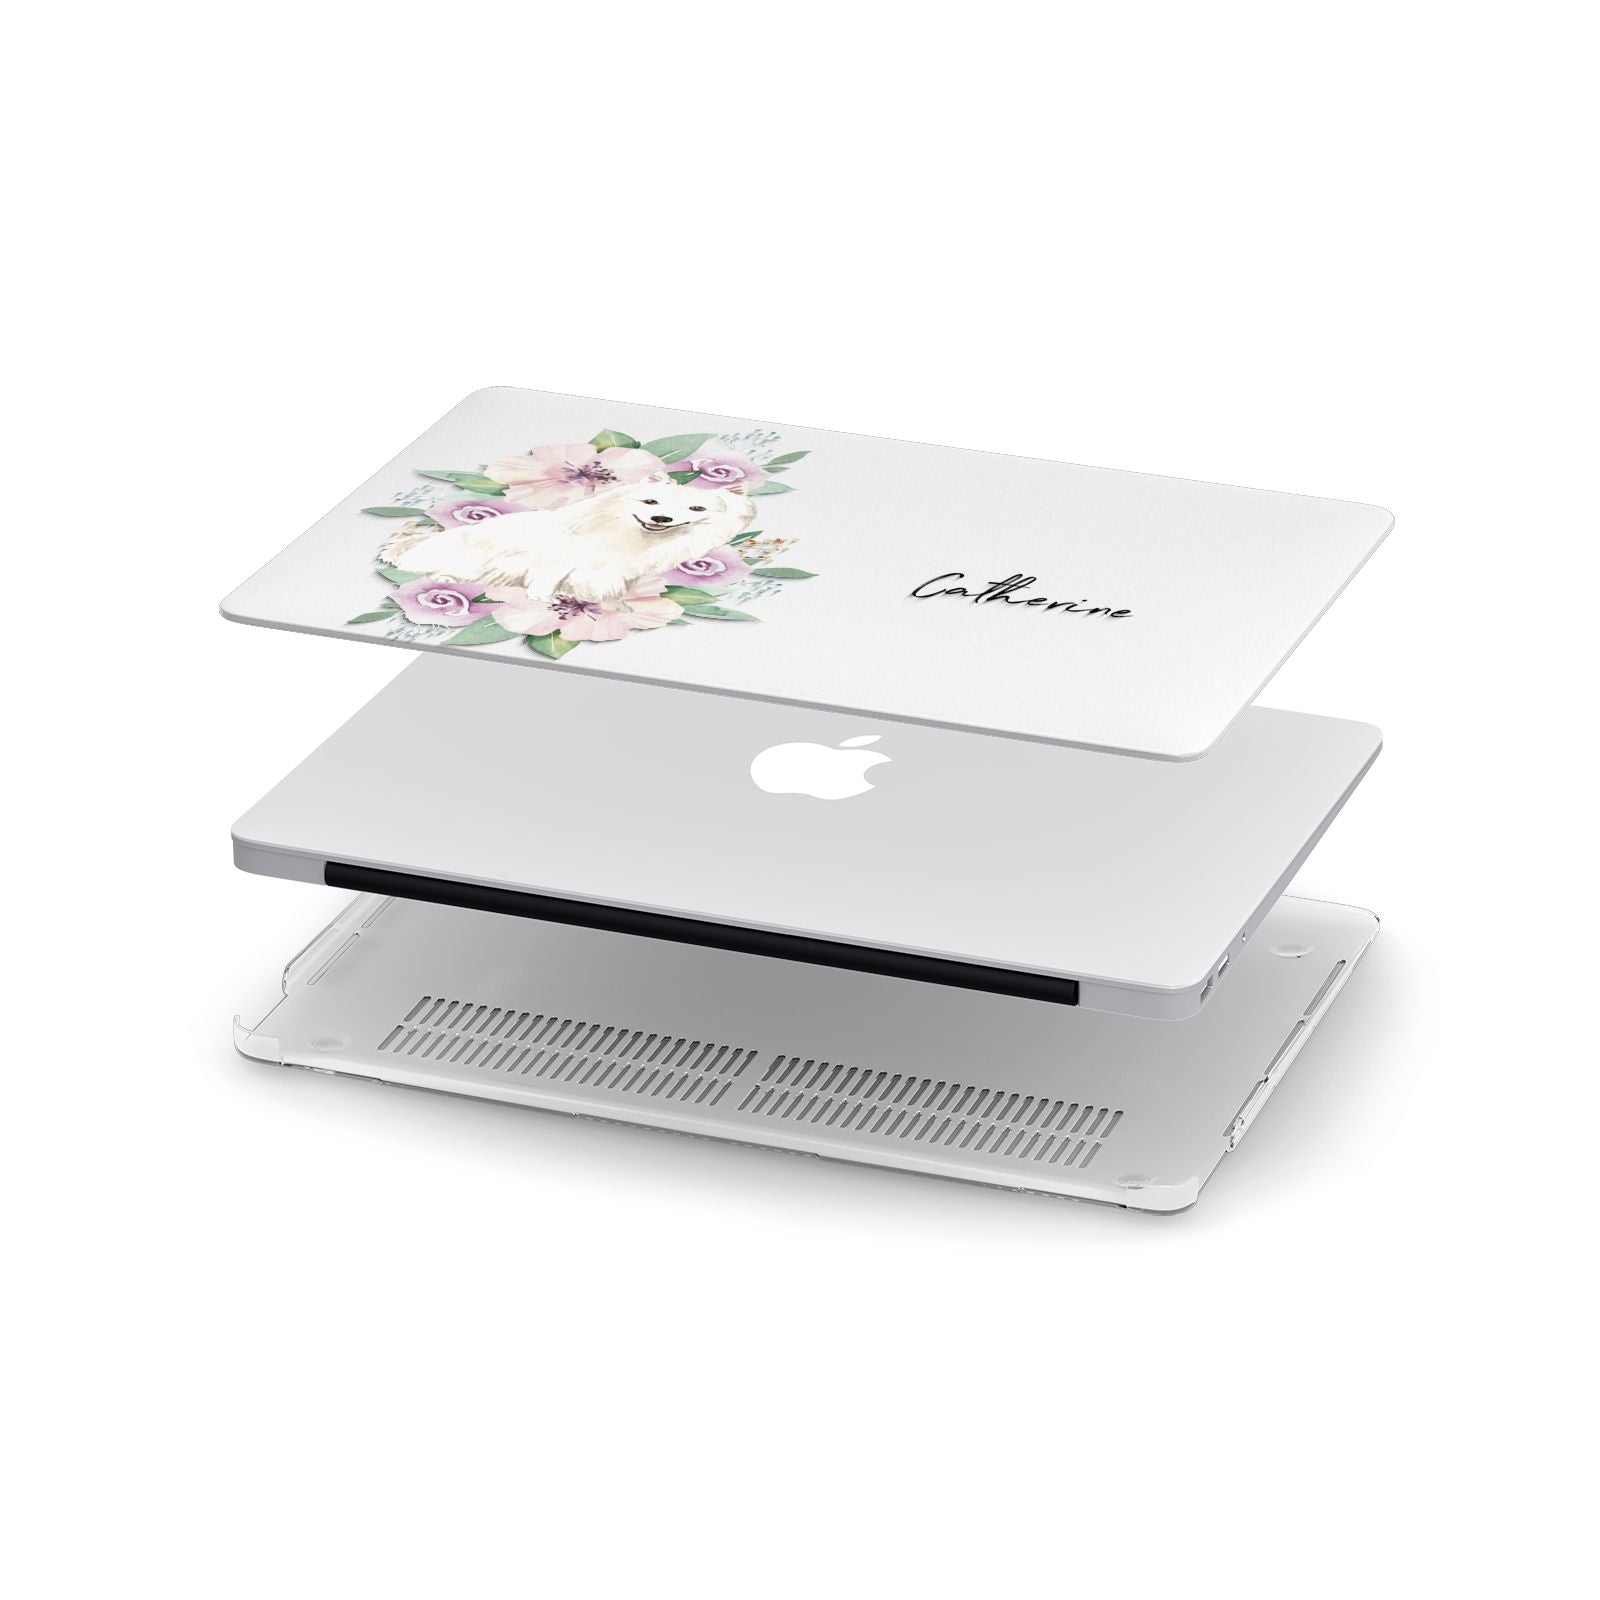 Personalised Japanese Spitz Apple MacBook Case in Detail